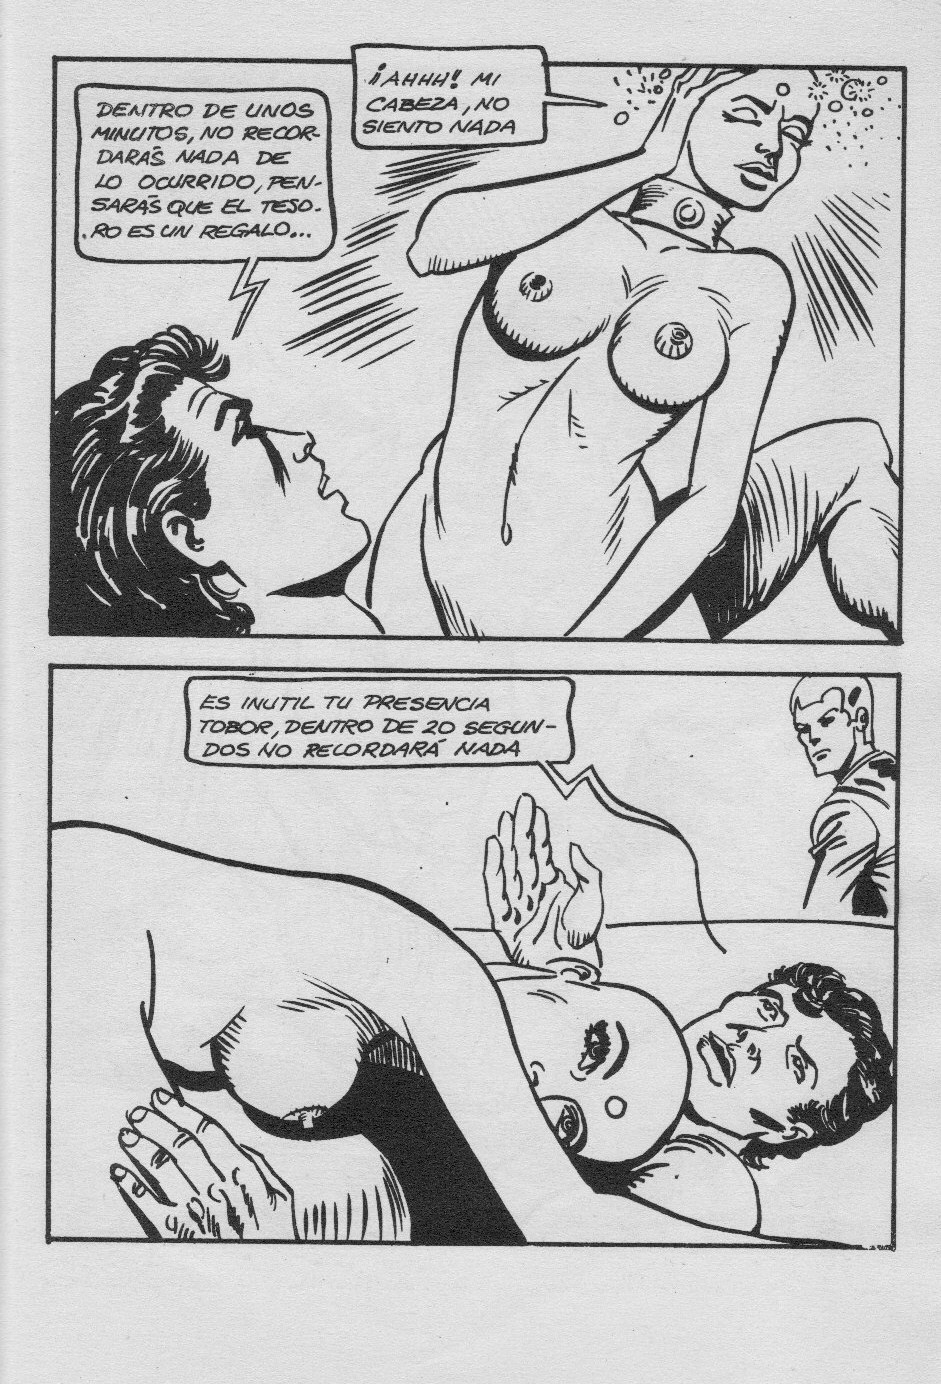 Las Eroticas Aventuras de Corsican Sexpace - N°4 - Servicios a domicilio [Spanish] 58